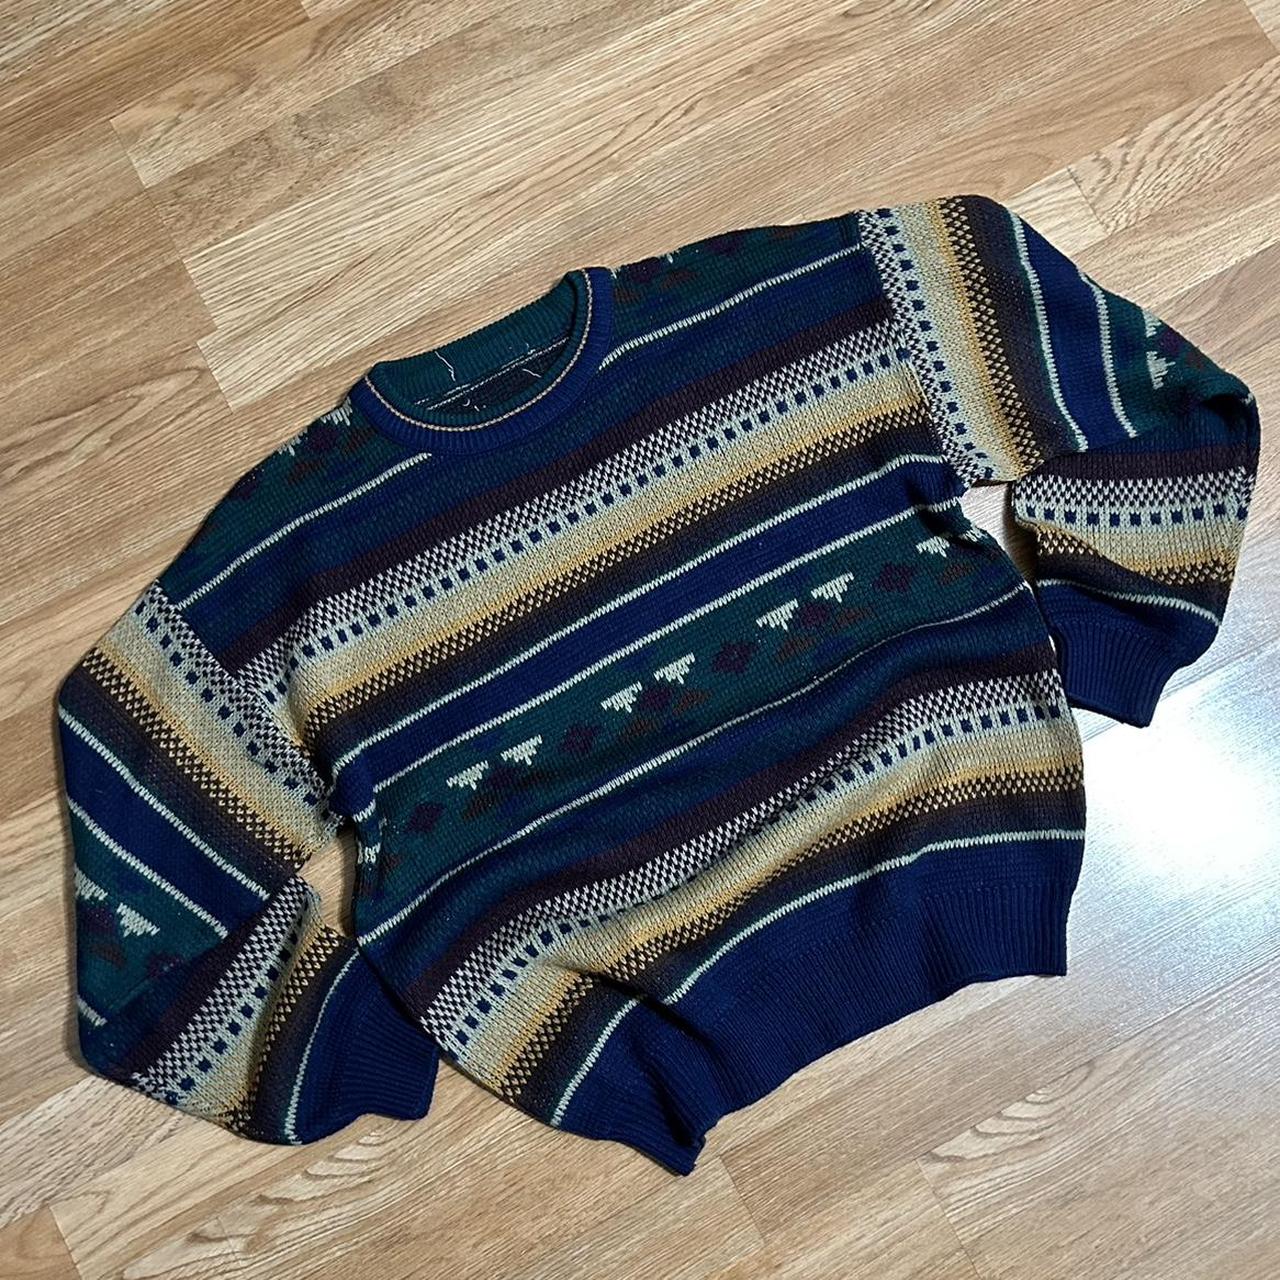 Vintage 80s/90s Aztec Pattern Knit Sweater. great... - Depop